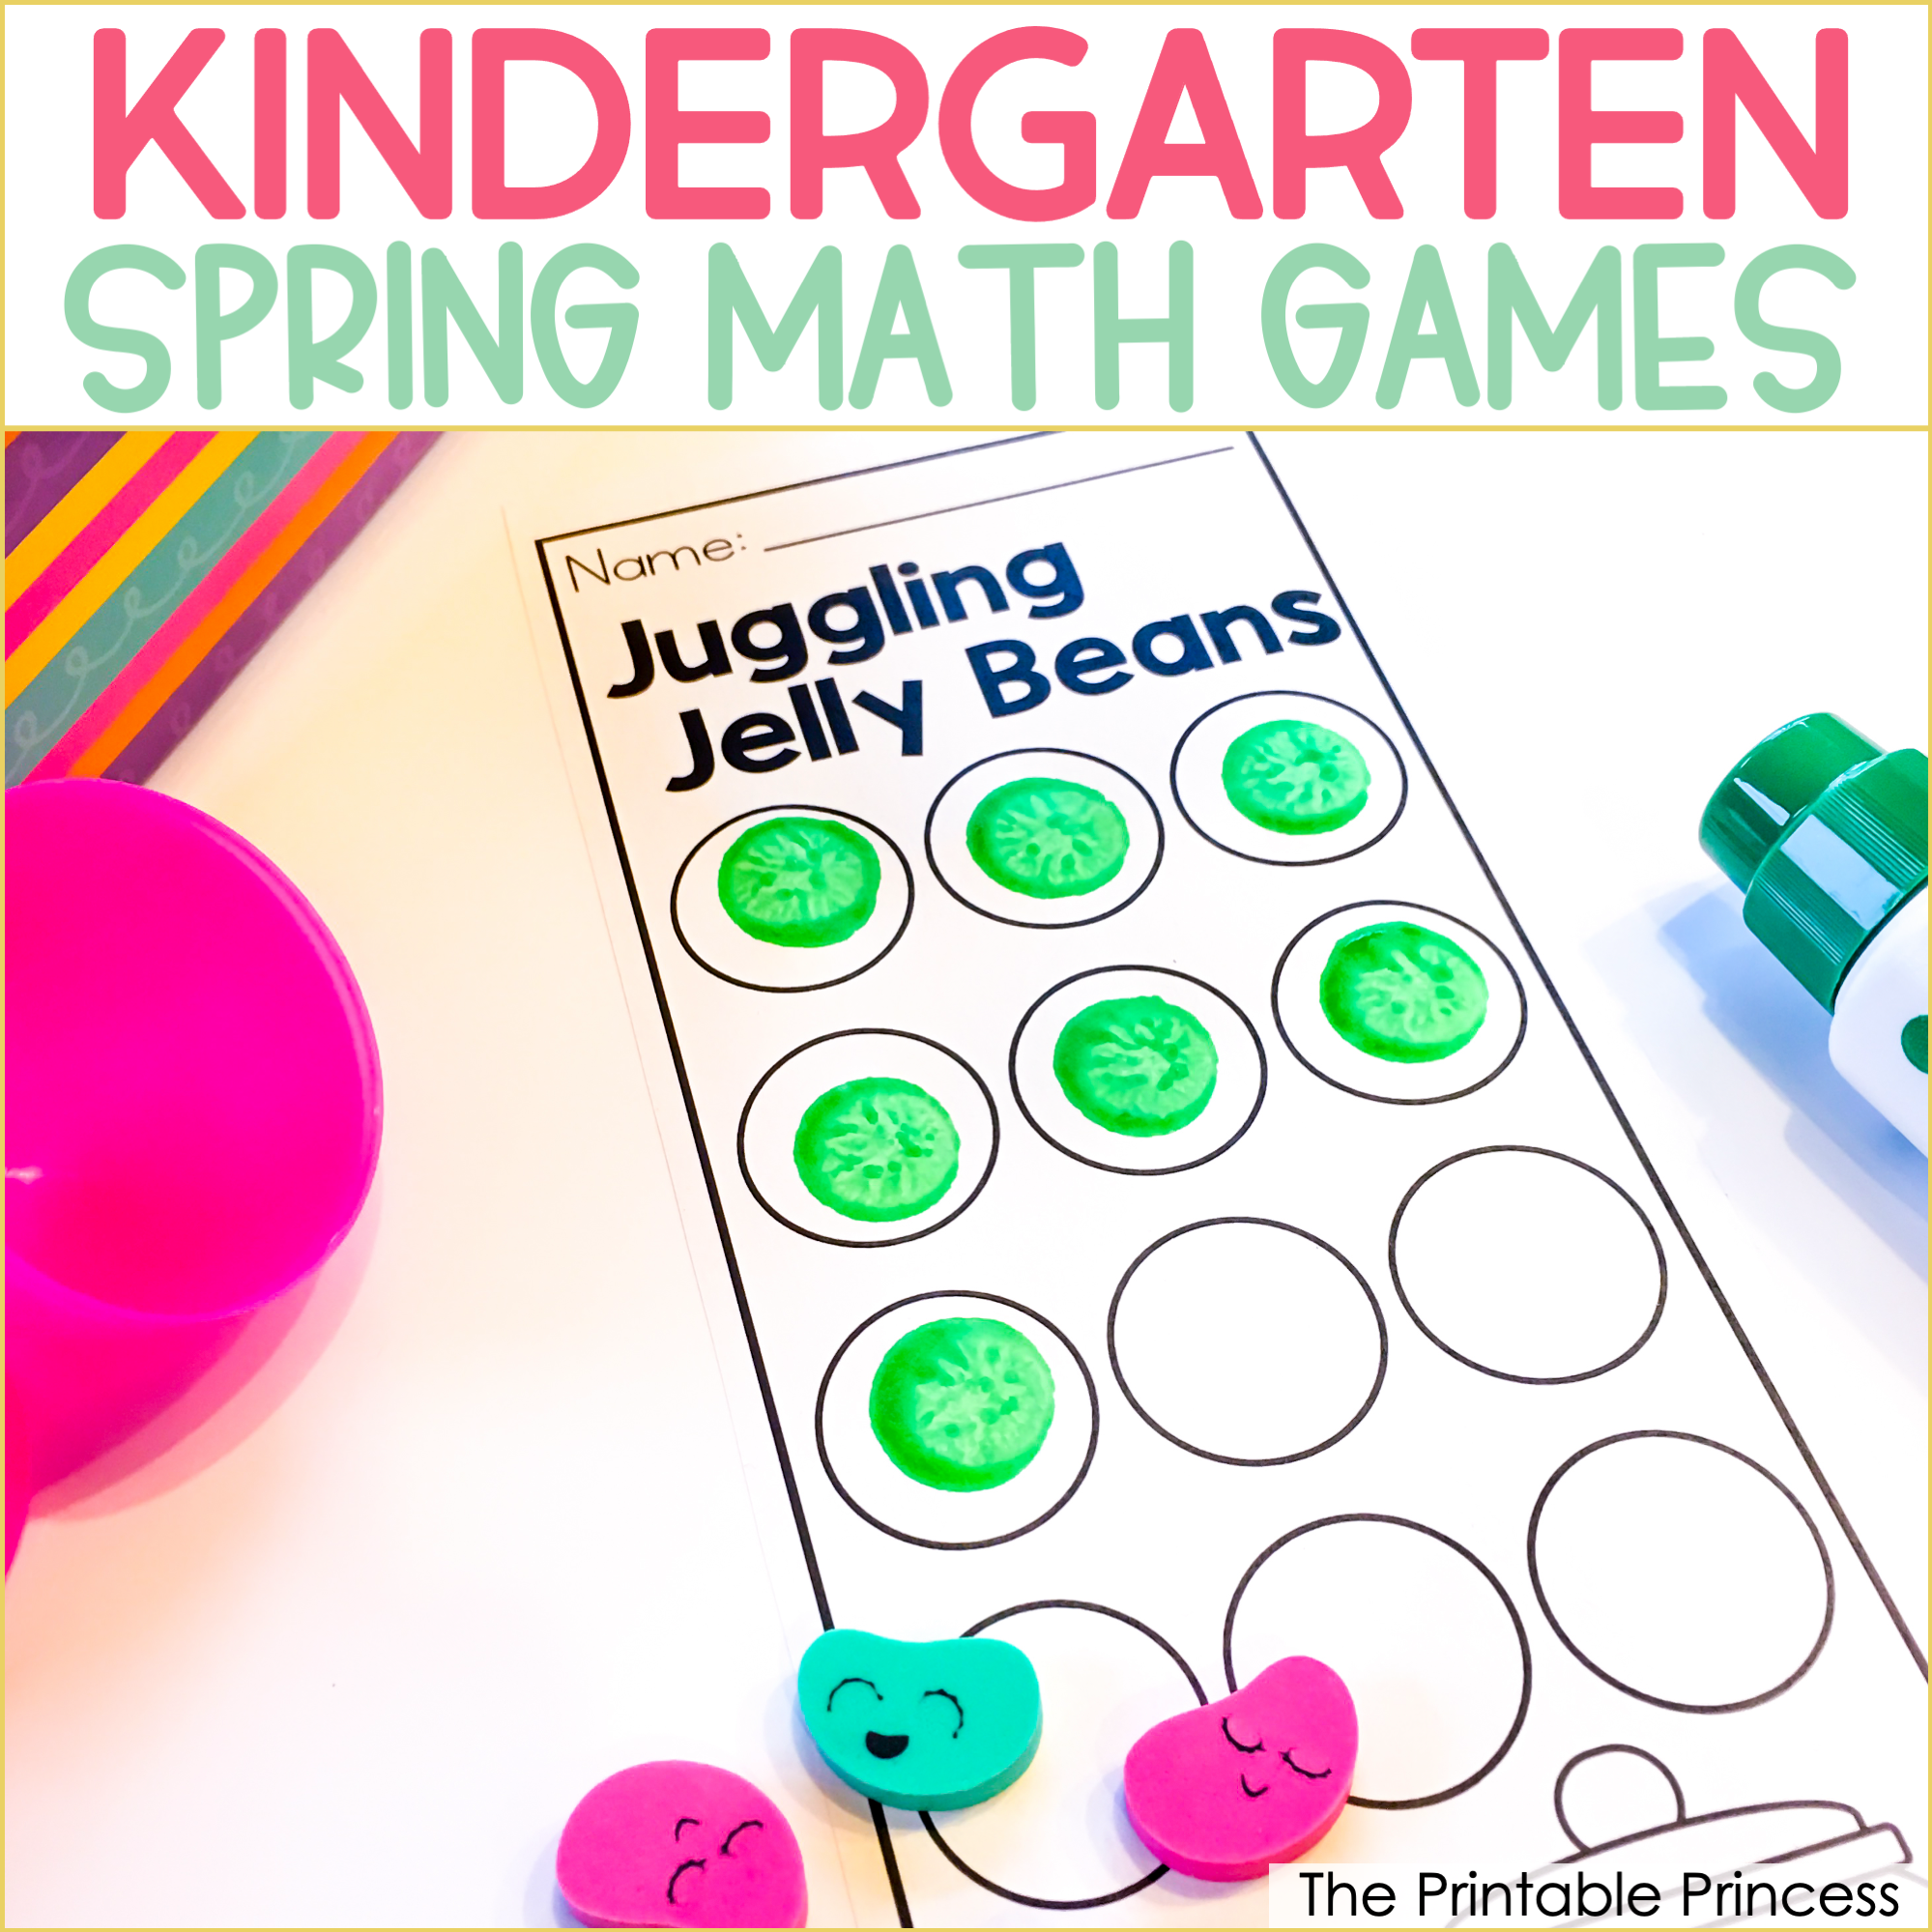 Spring Math Games for Kindergarten